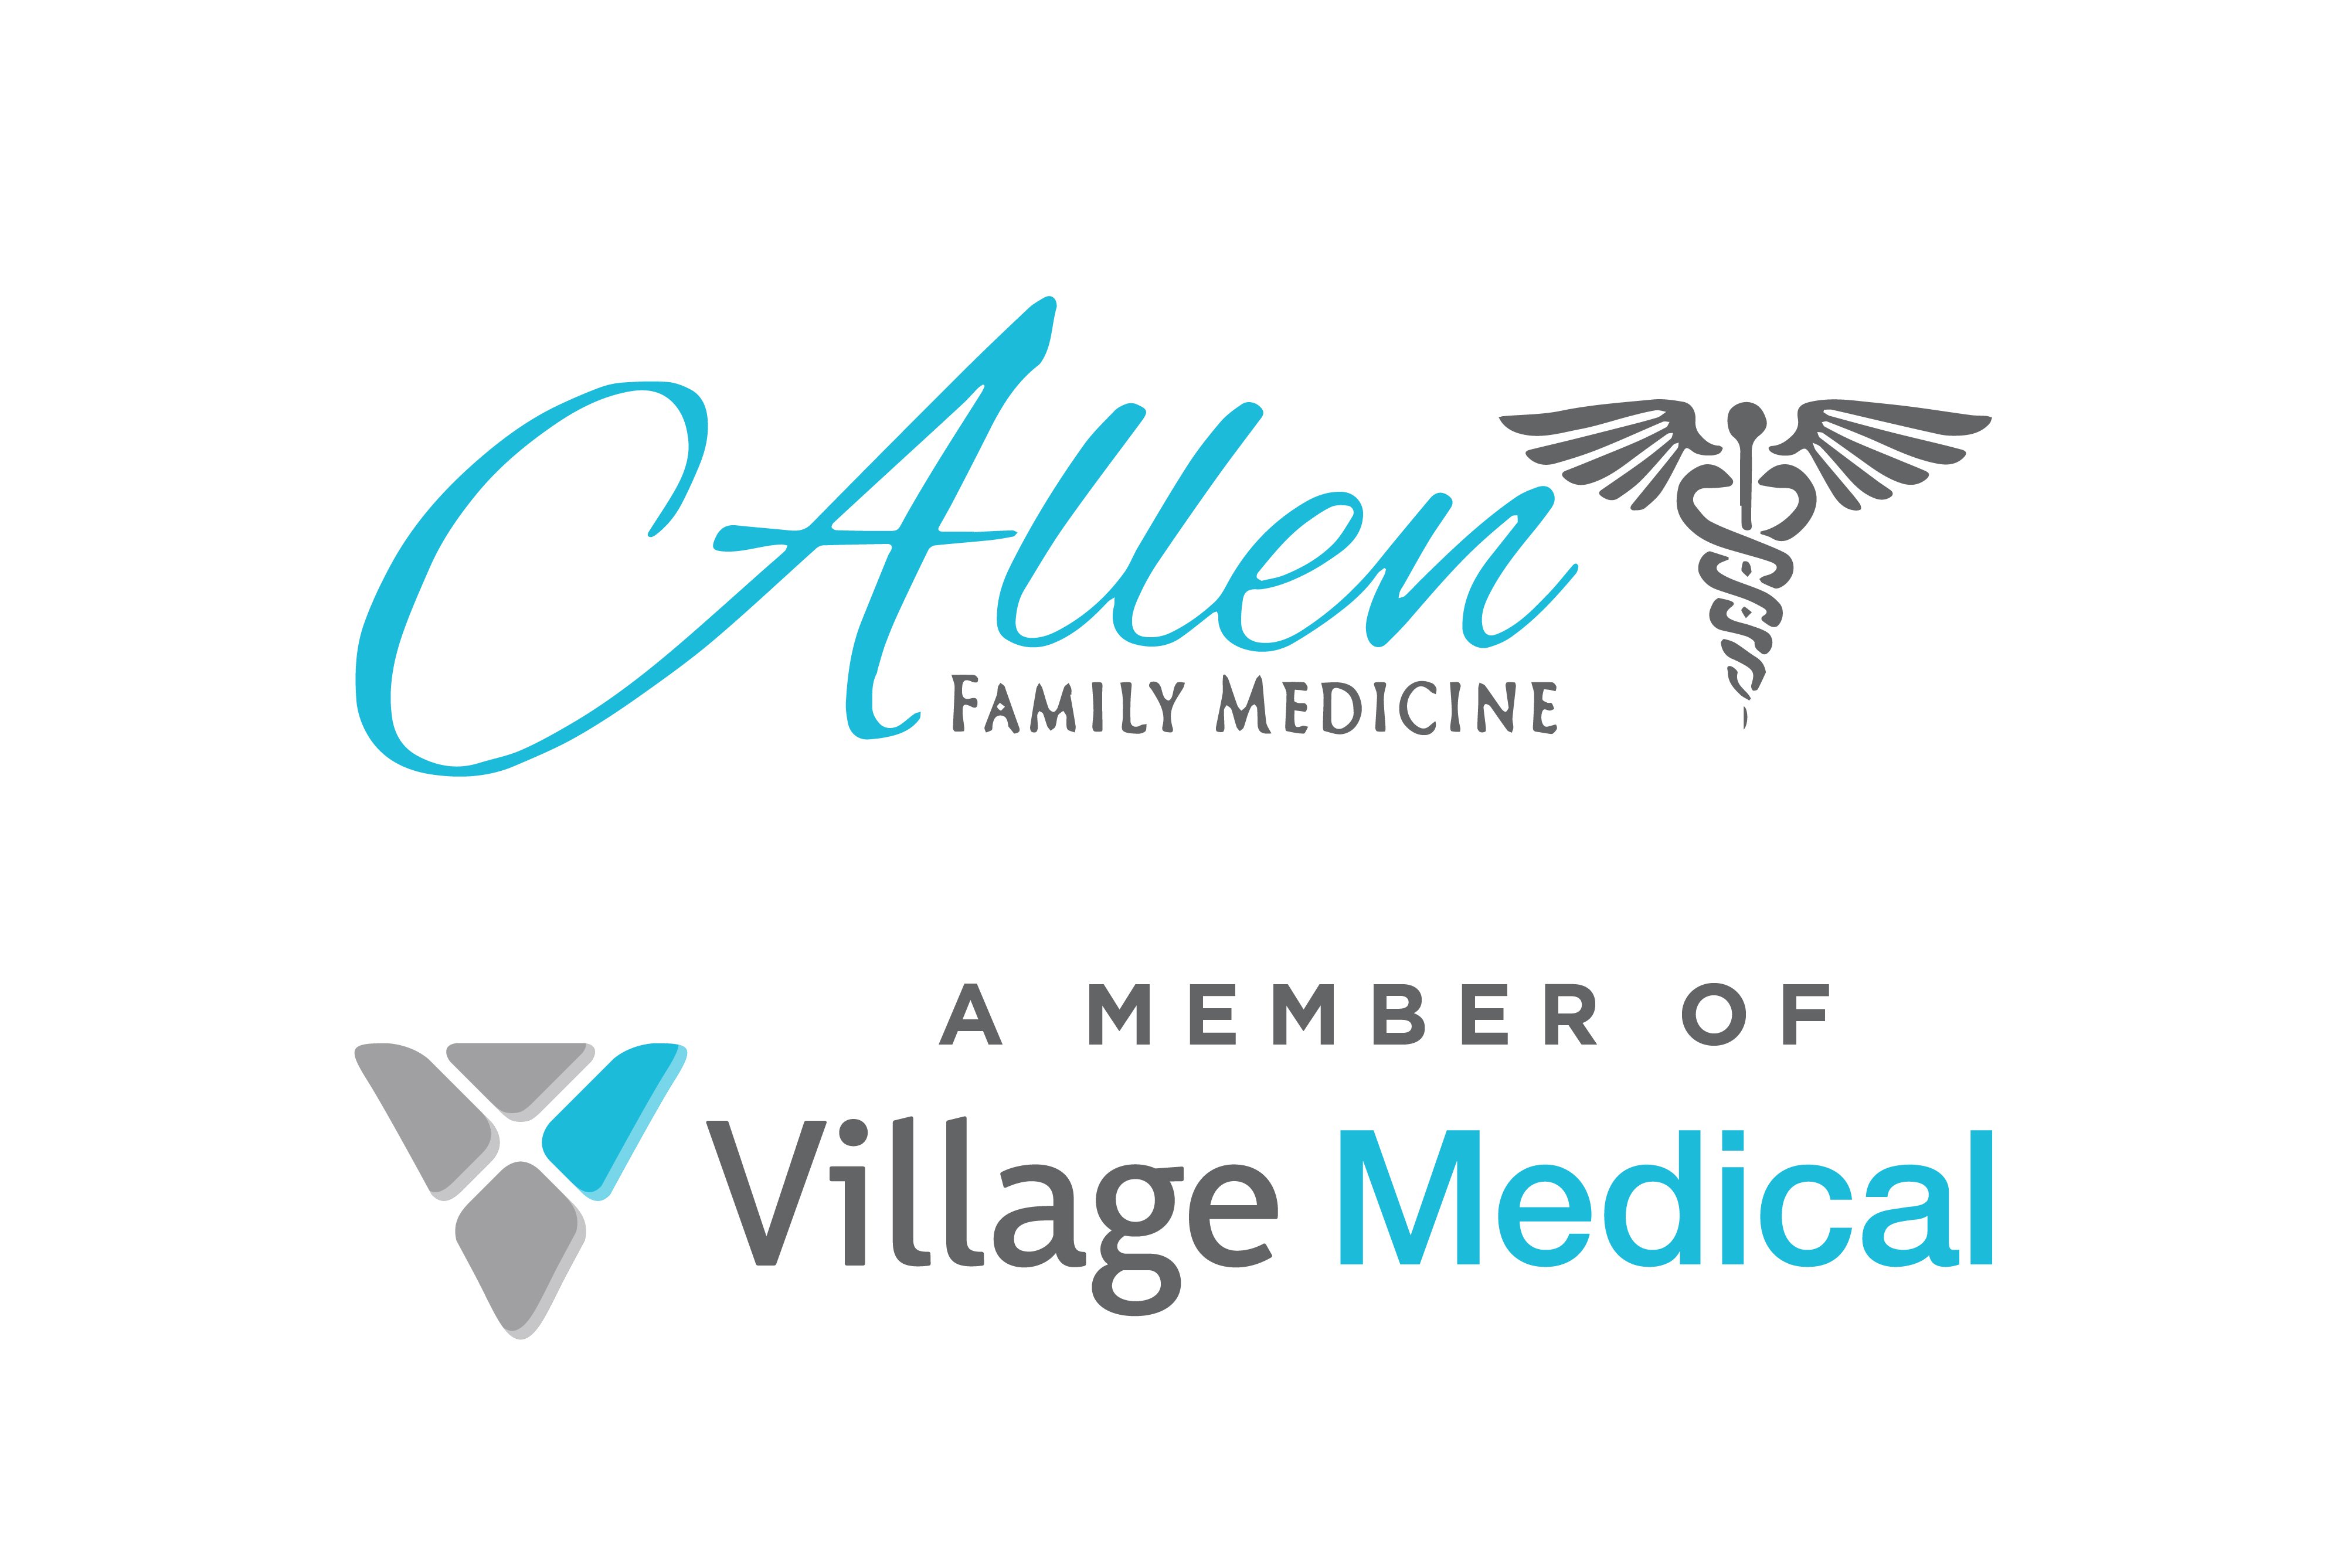 Village Medical - Allen Family Medicine - 7233 E. Baseline Rd.,  Mesa, AZ, 85209.